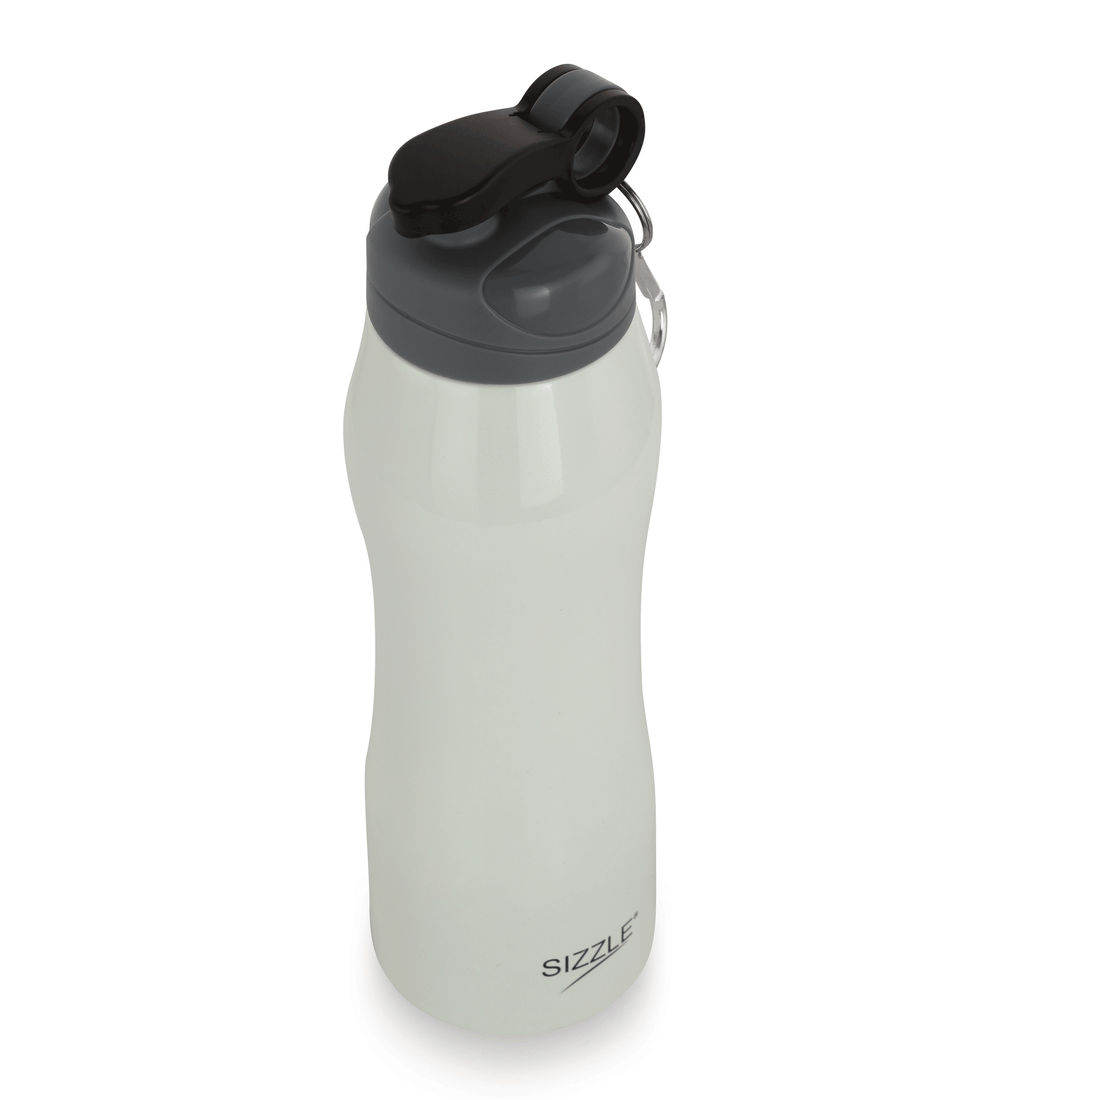 Adventure Stainless Steel Water Bottle - 750ml - Single Wall